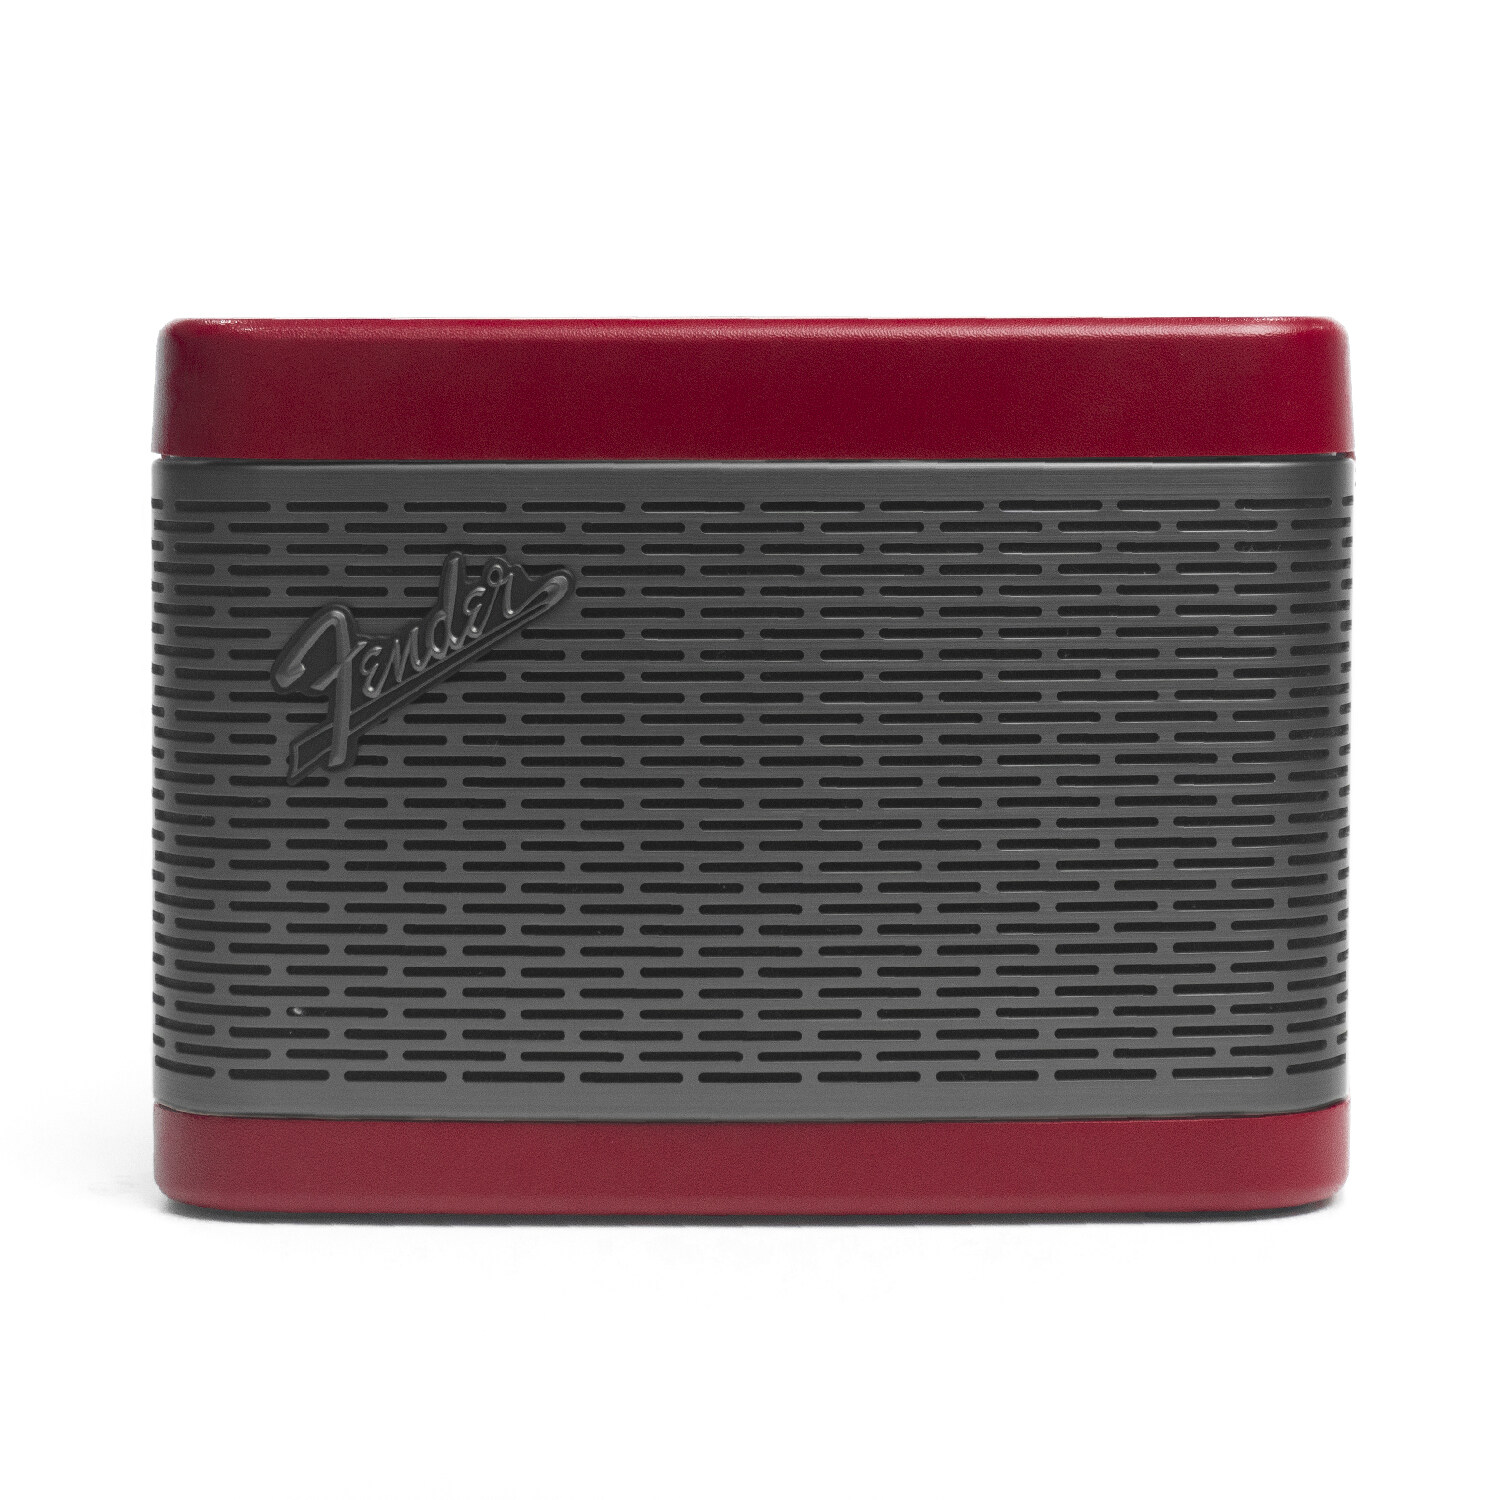 [โค้ดลดเพิ่ม 250.-] FENDER ลำโพง Newport 2 Bluetooth Speaker - 2 สี 4 แบบ